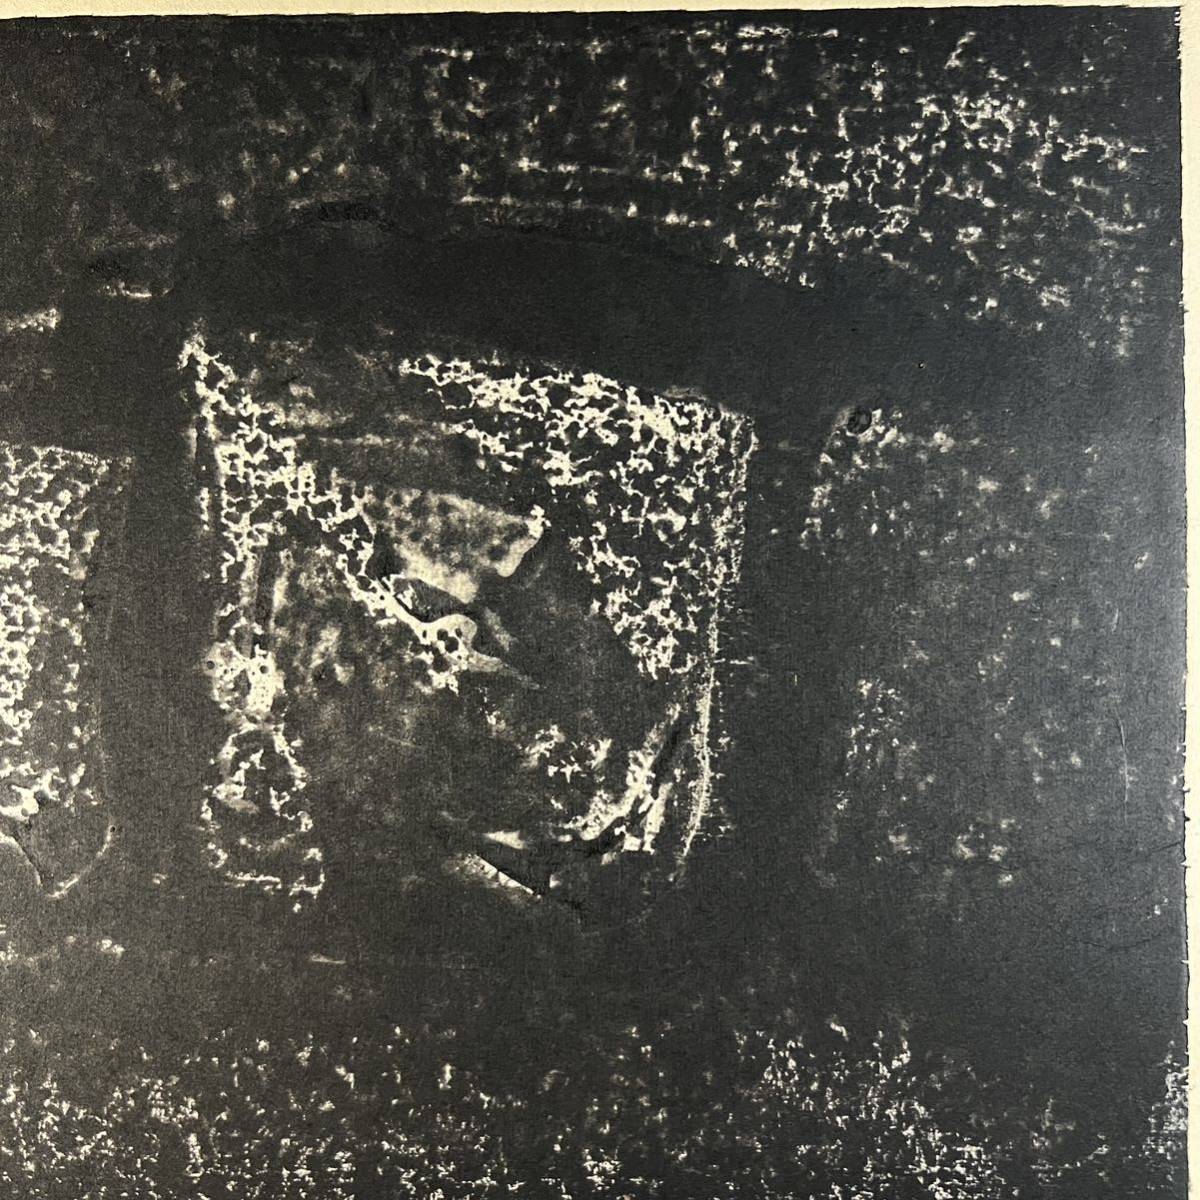 真作 手島圭三郎 『残雪』 木版画 1964年1月10日作 道版展会員 直筆サイン入り 直筆裏書きあり 絵本作家 版画_画像5